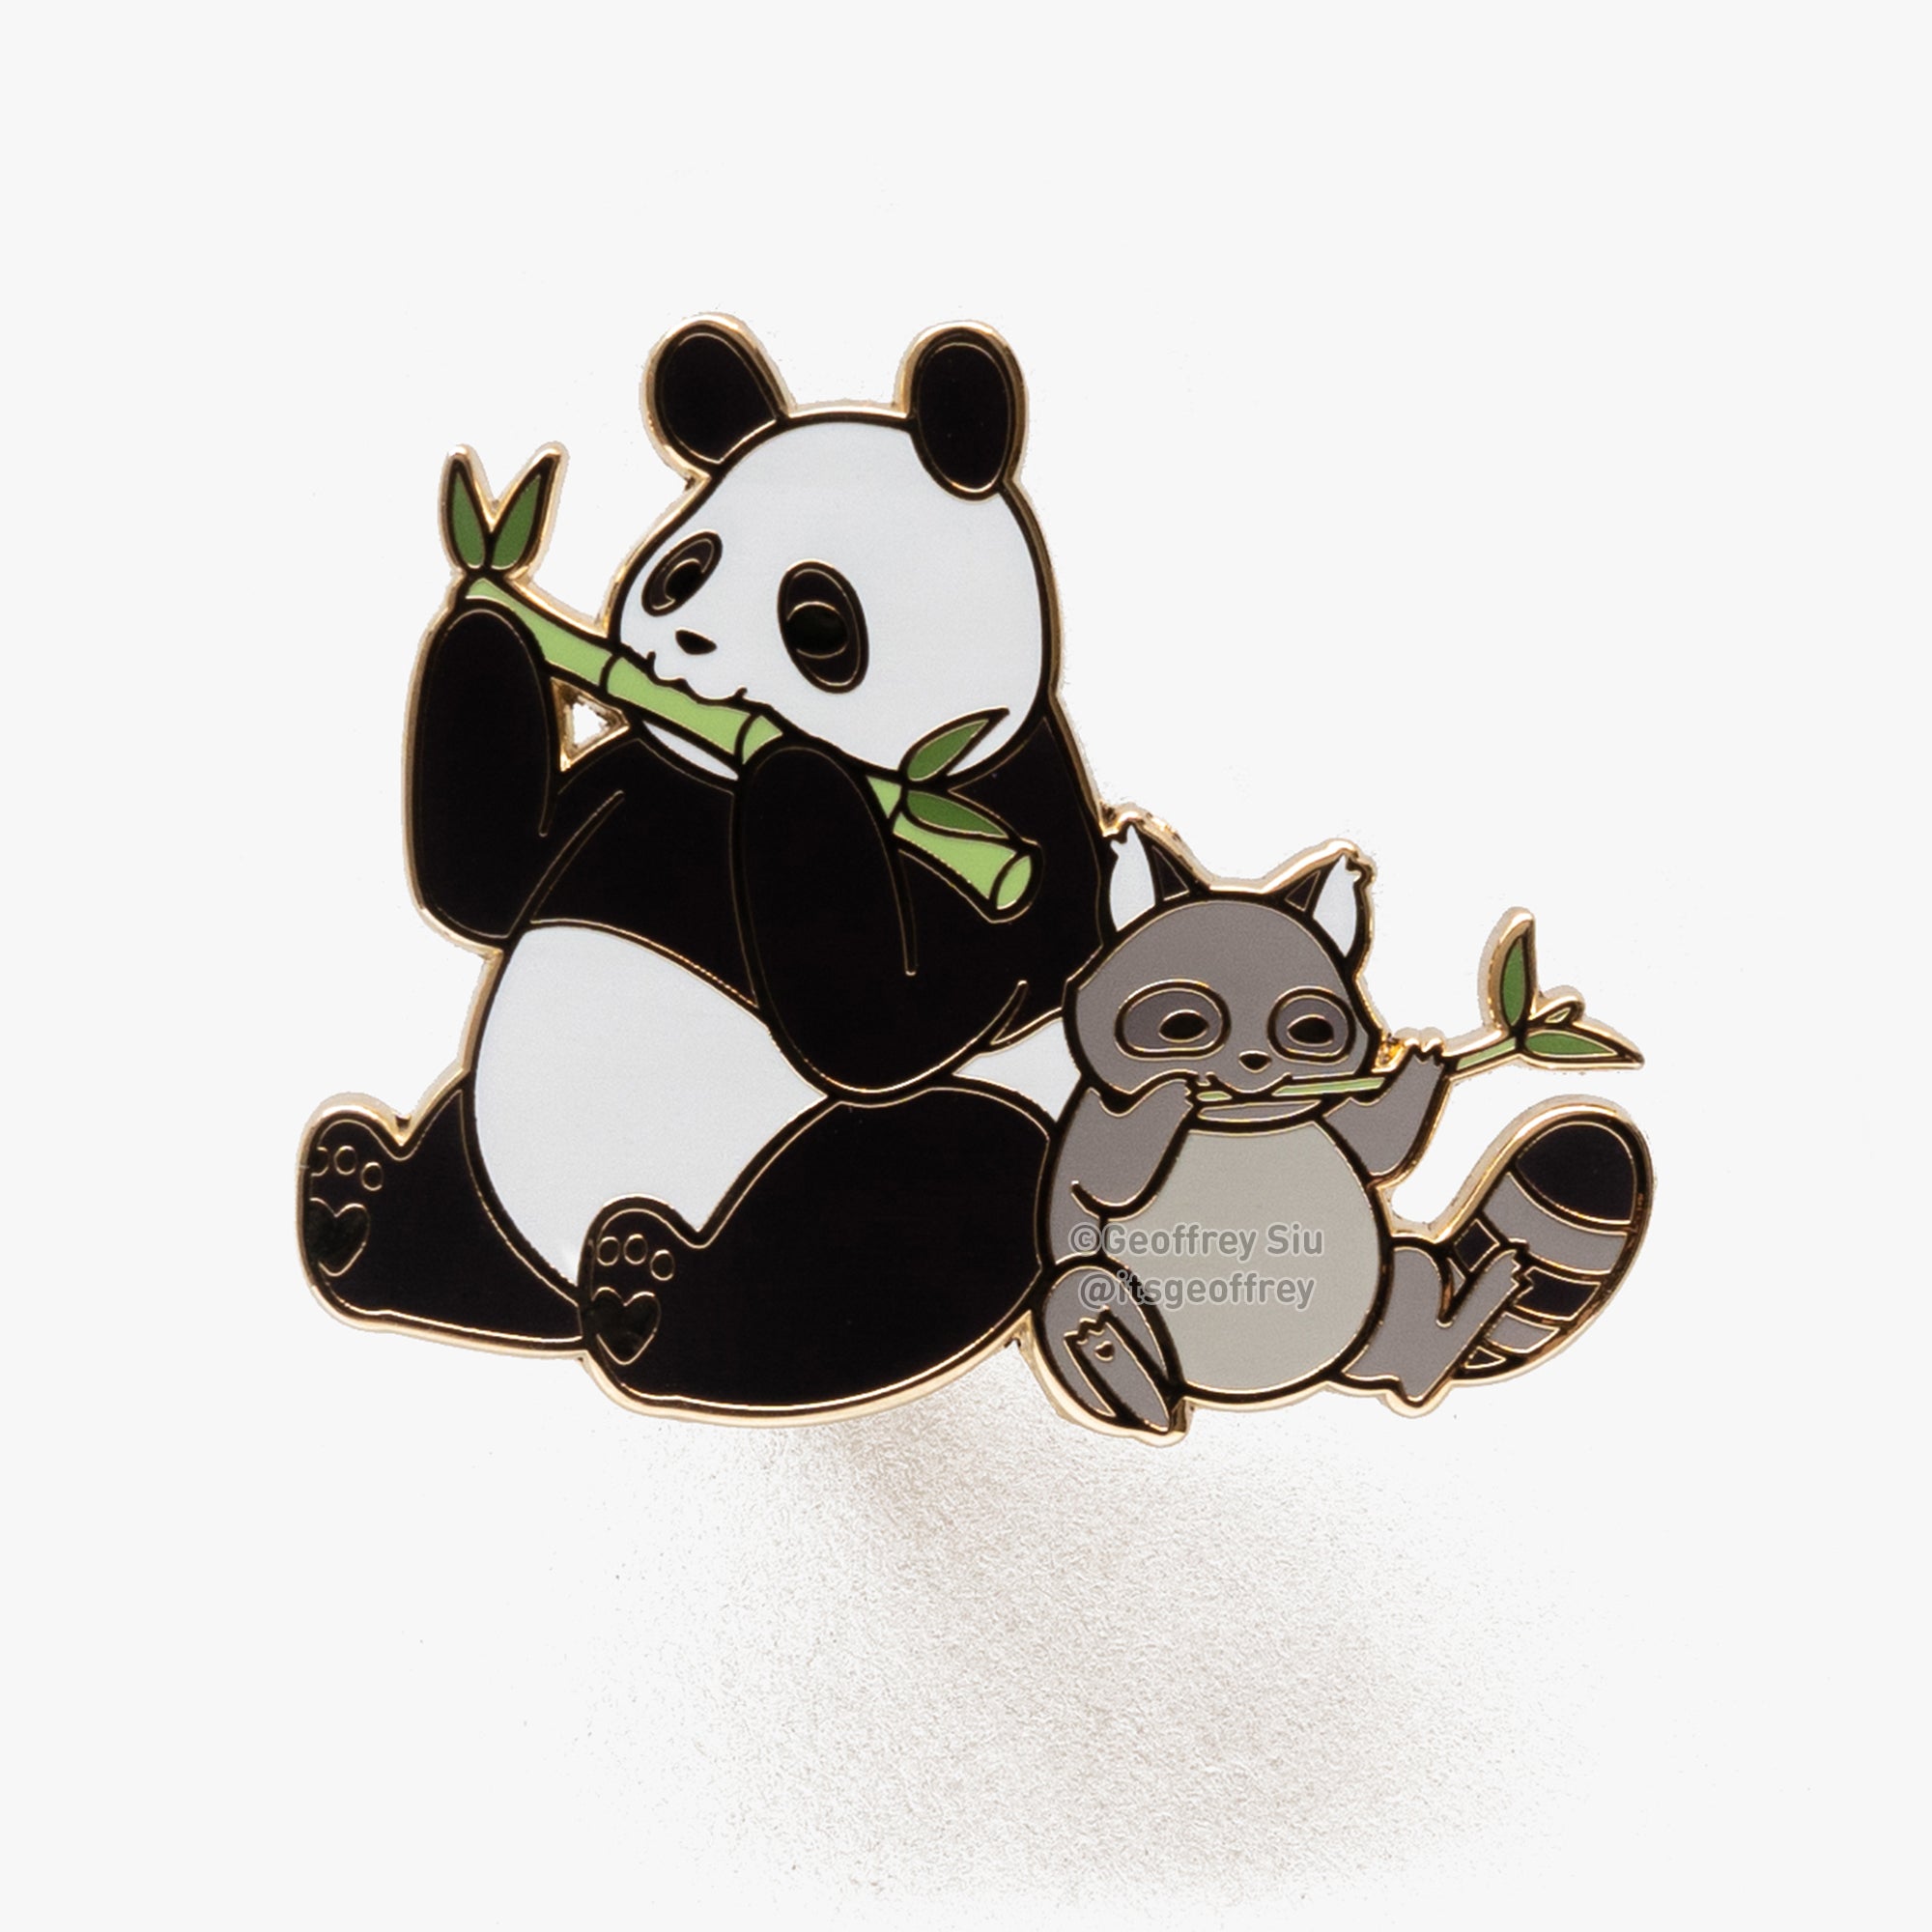 Trash Panda Hard Enamel Pin